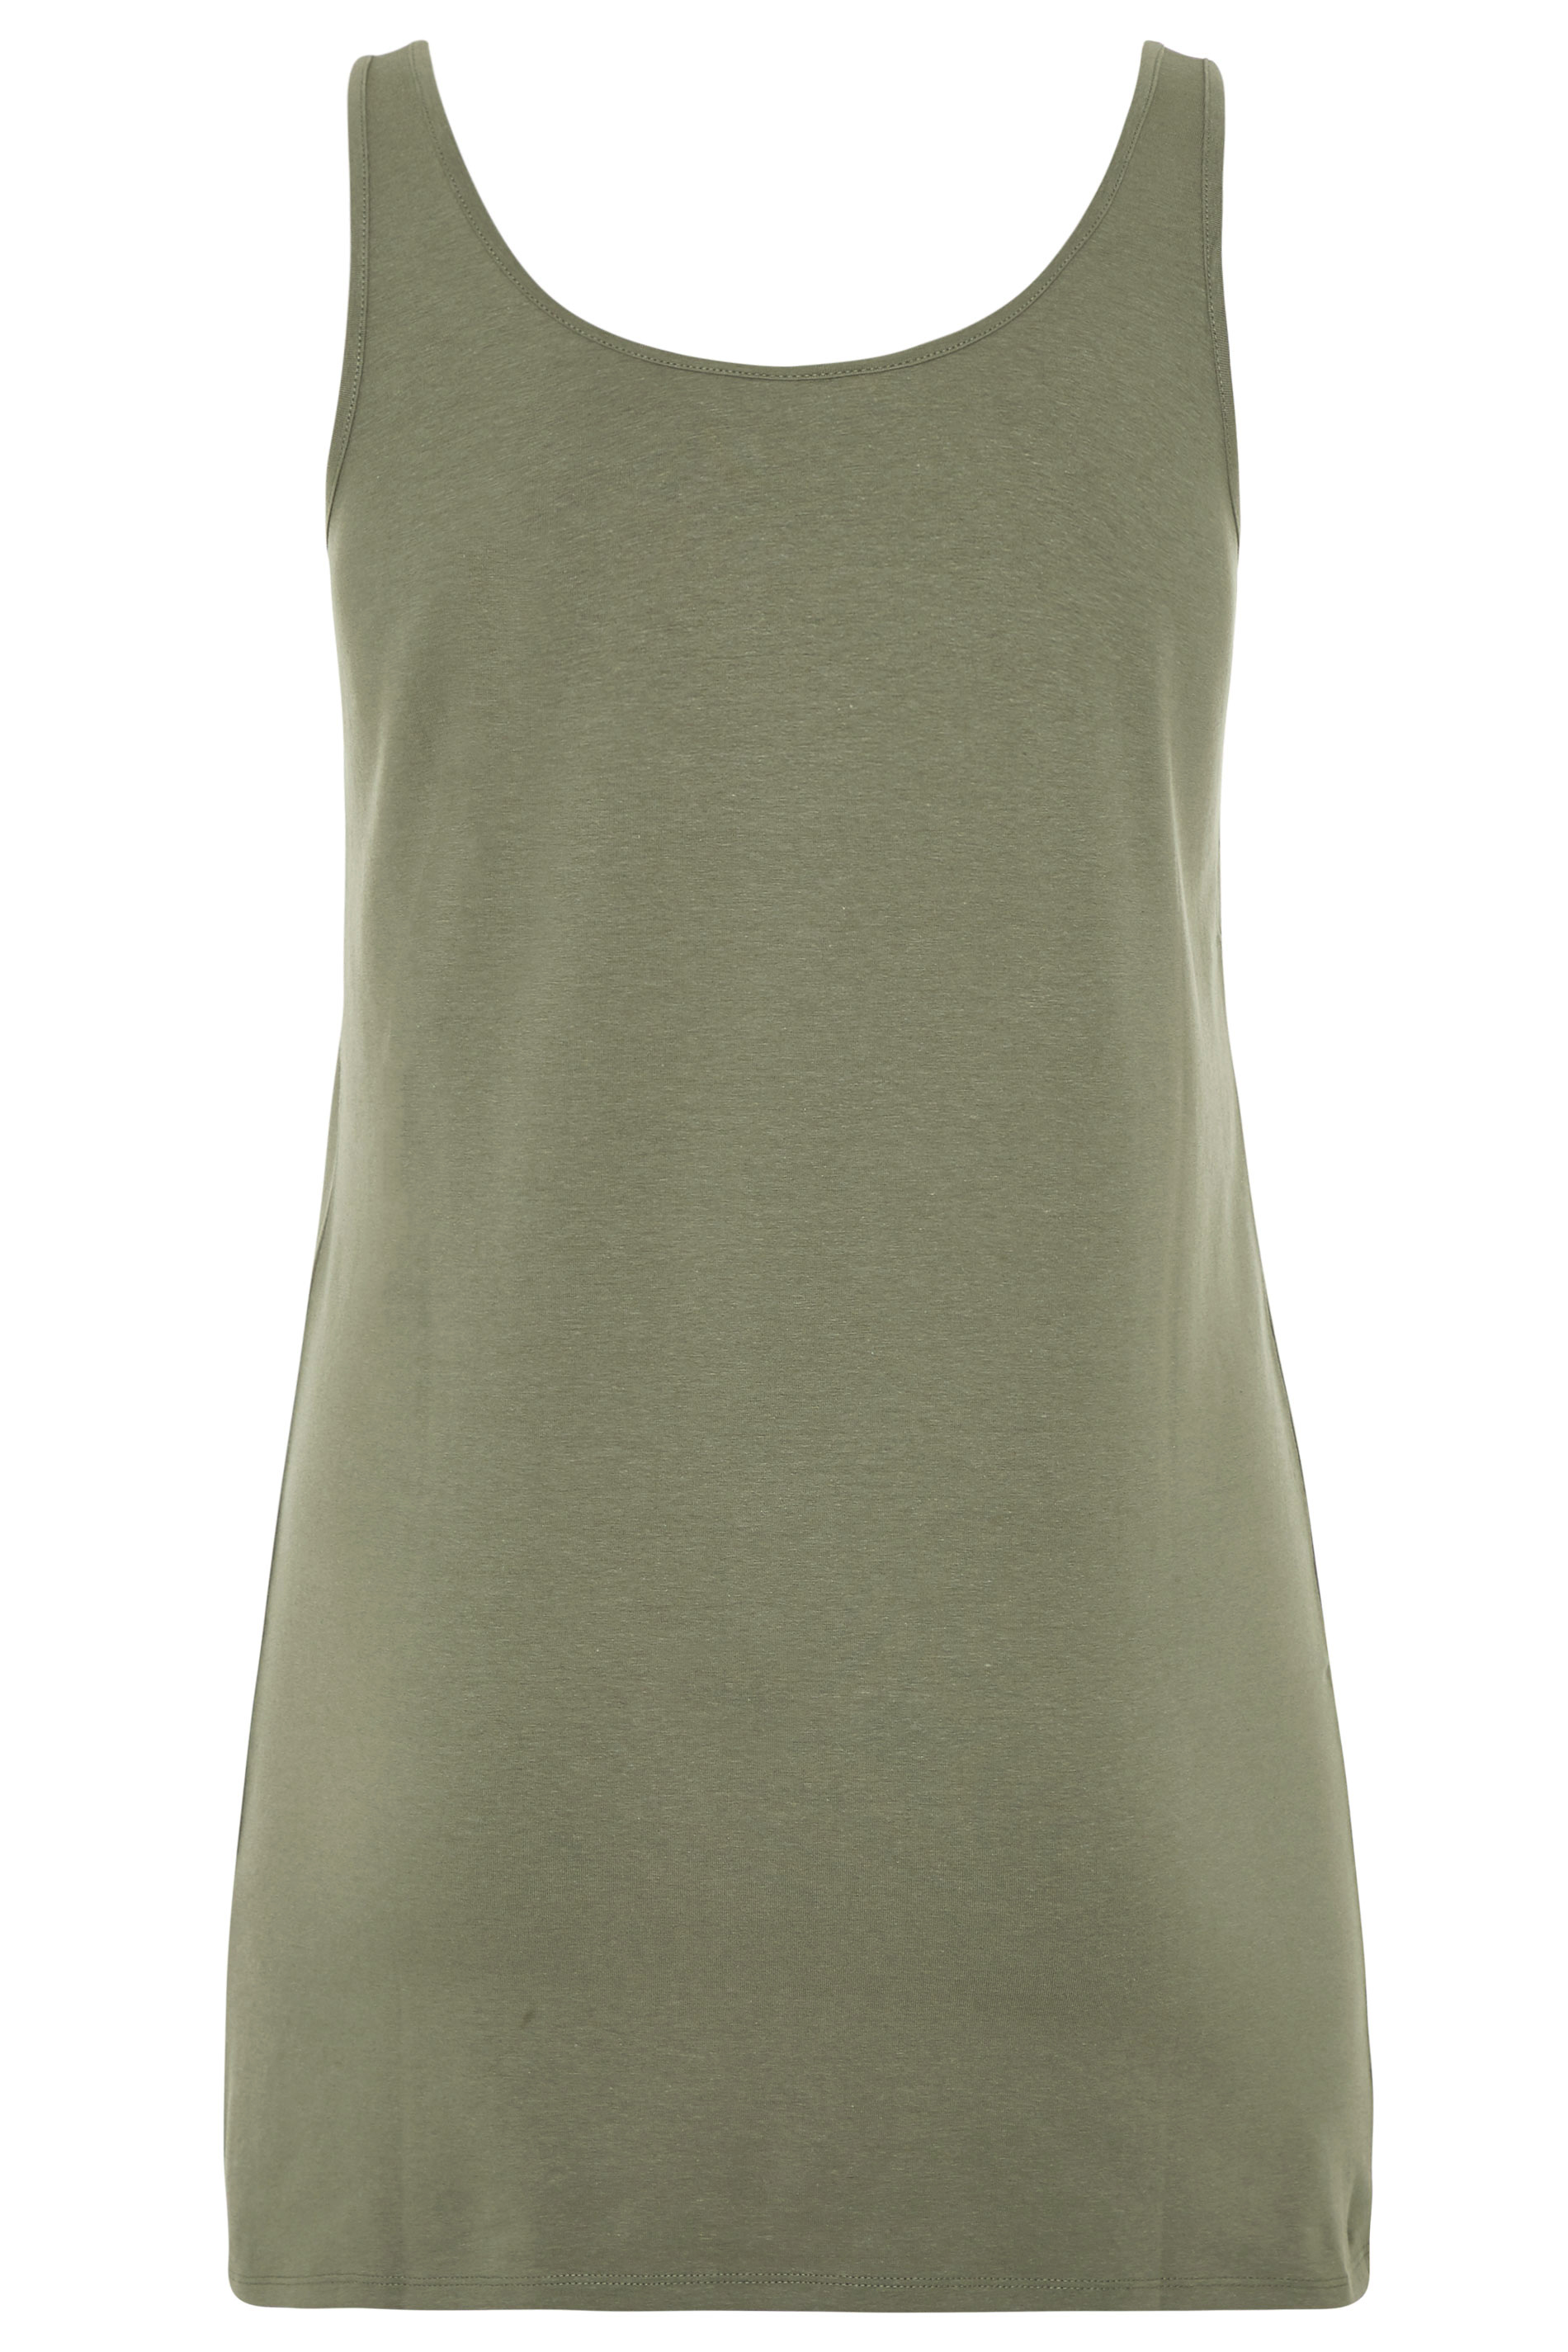 Khaki Longline Vest | Yours Clothing